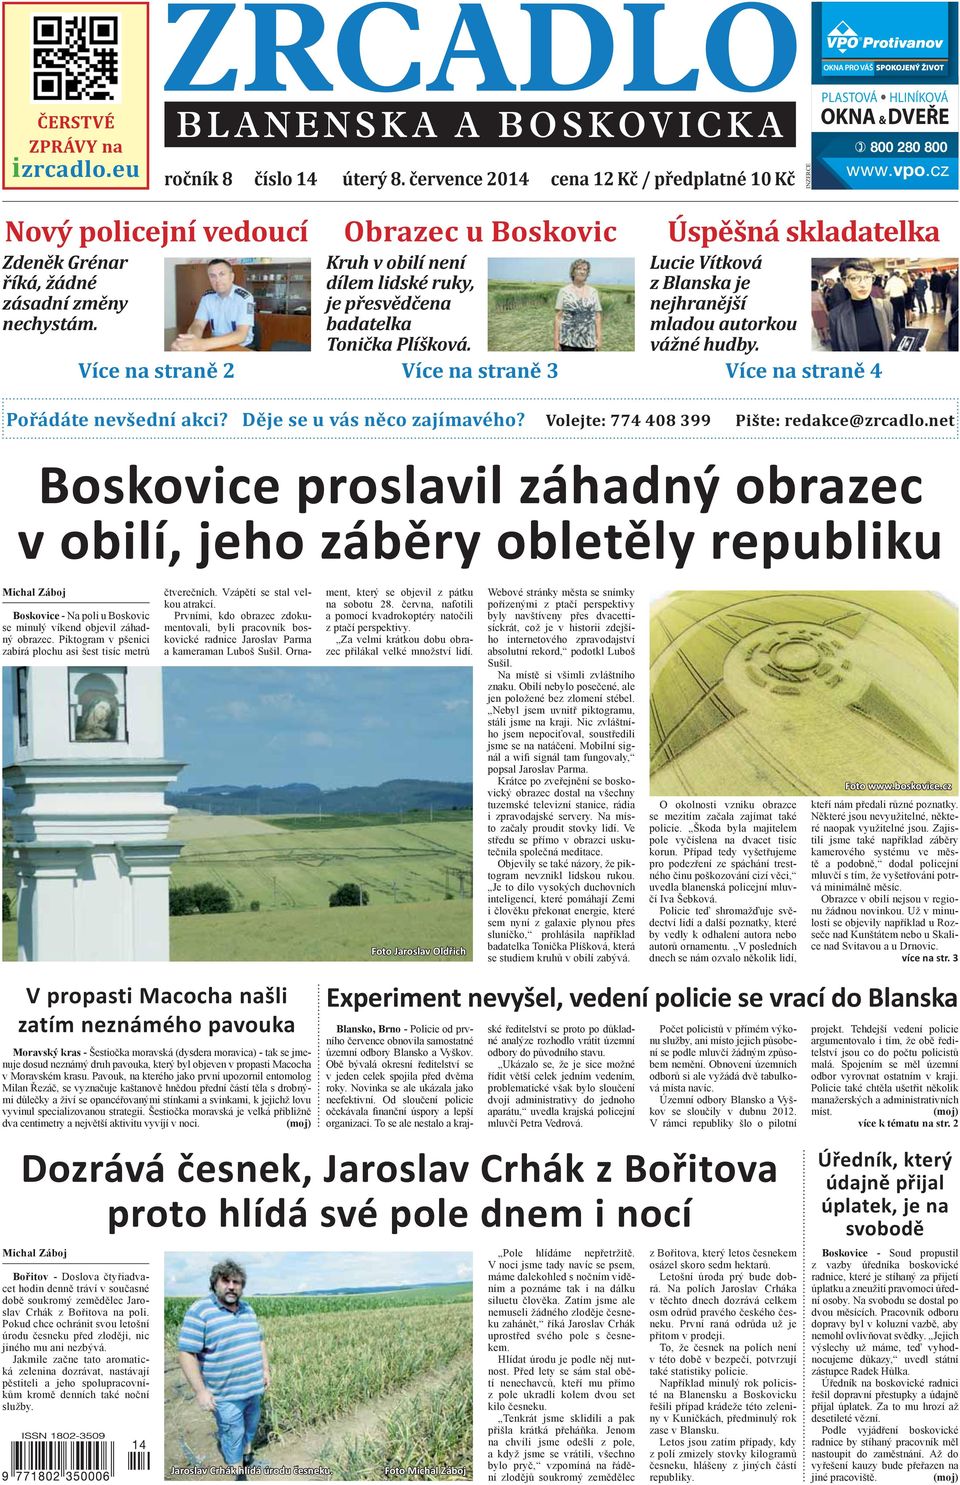 Boskovice proslavil záhadný obrazec v obilí, jeho záběry obletěly republiku  - PDF Free Download